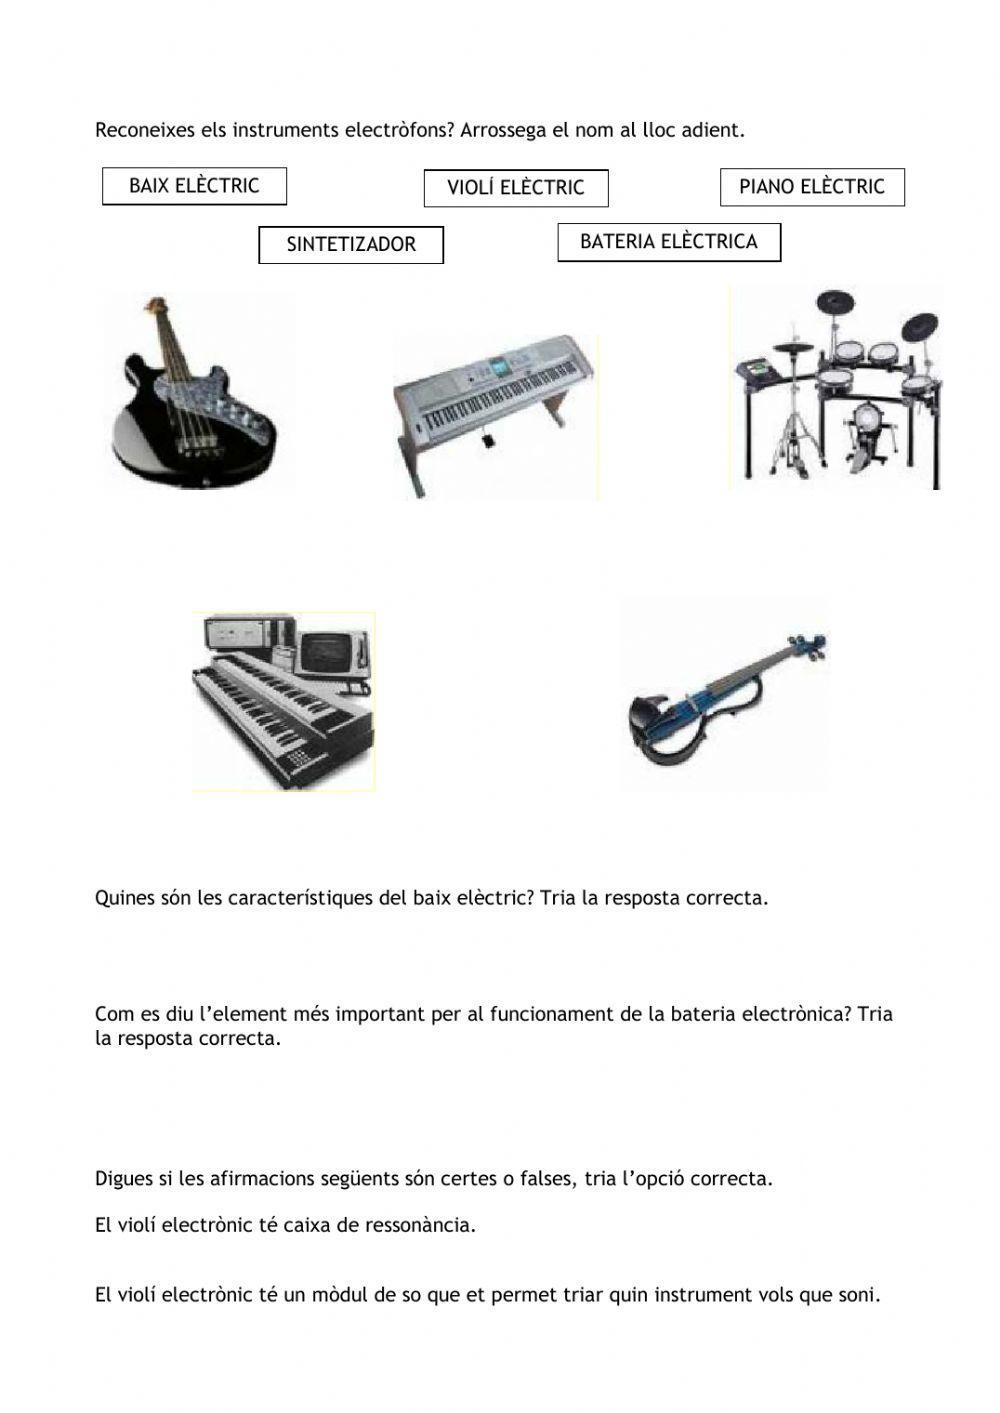 Els instruments electròfons